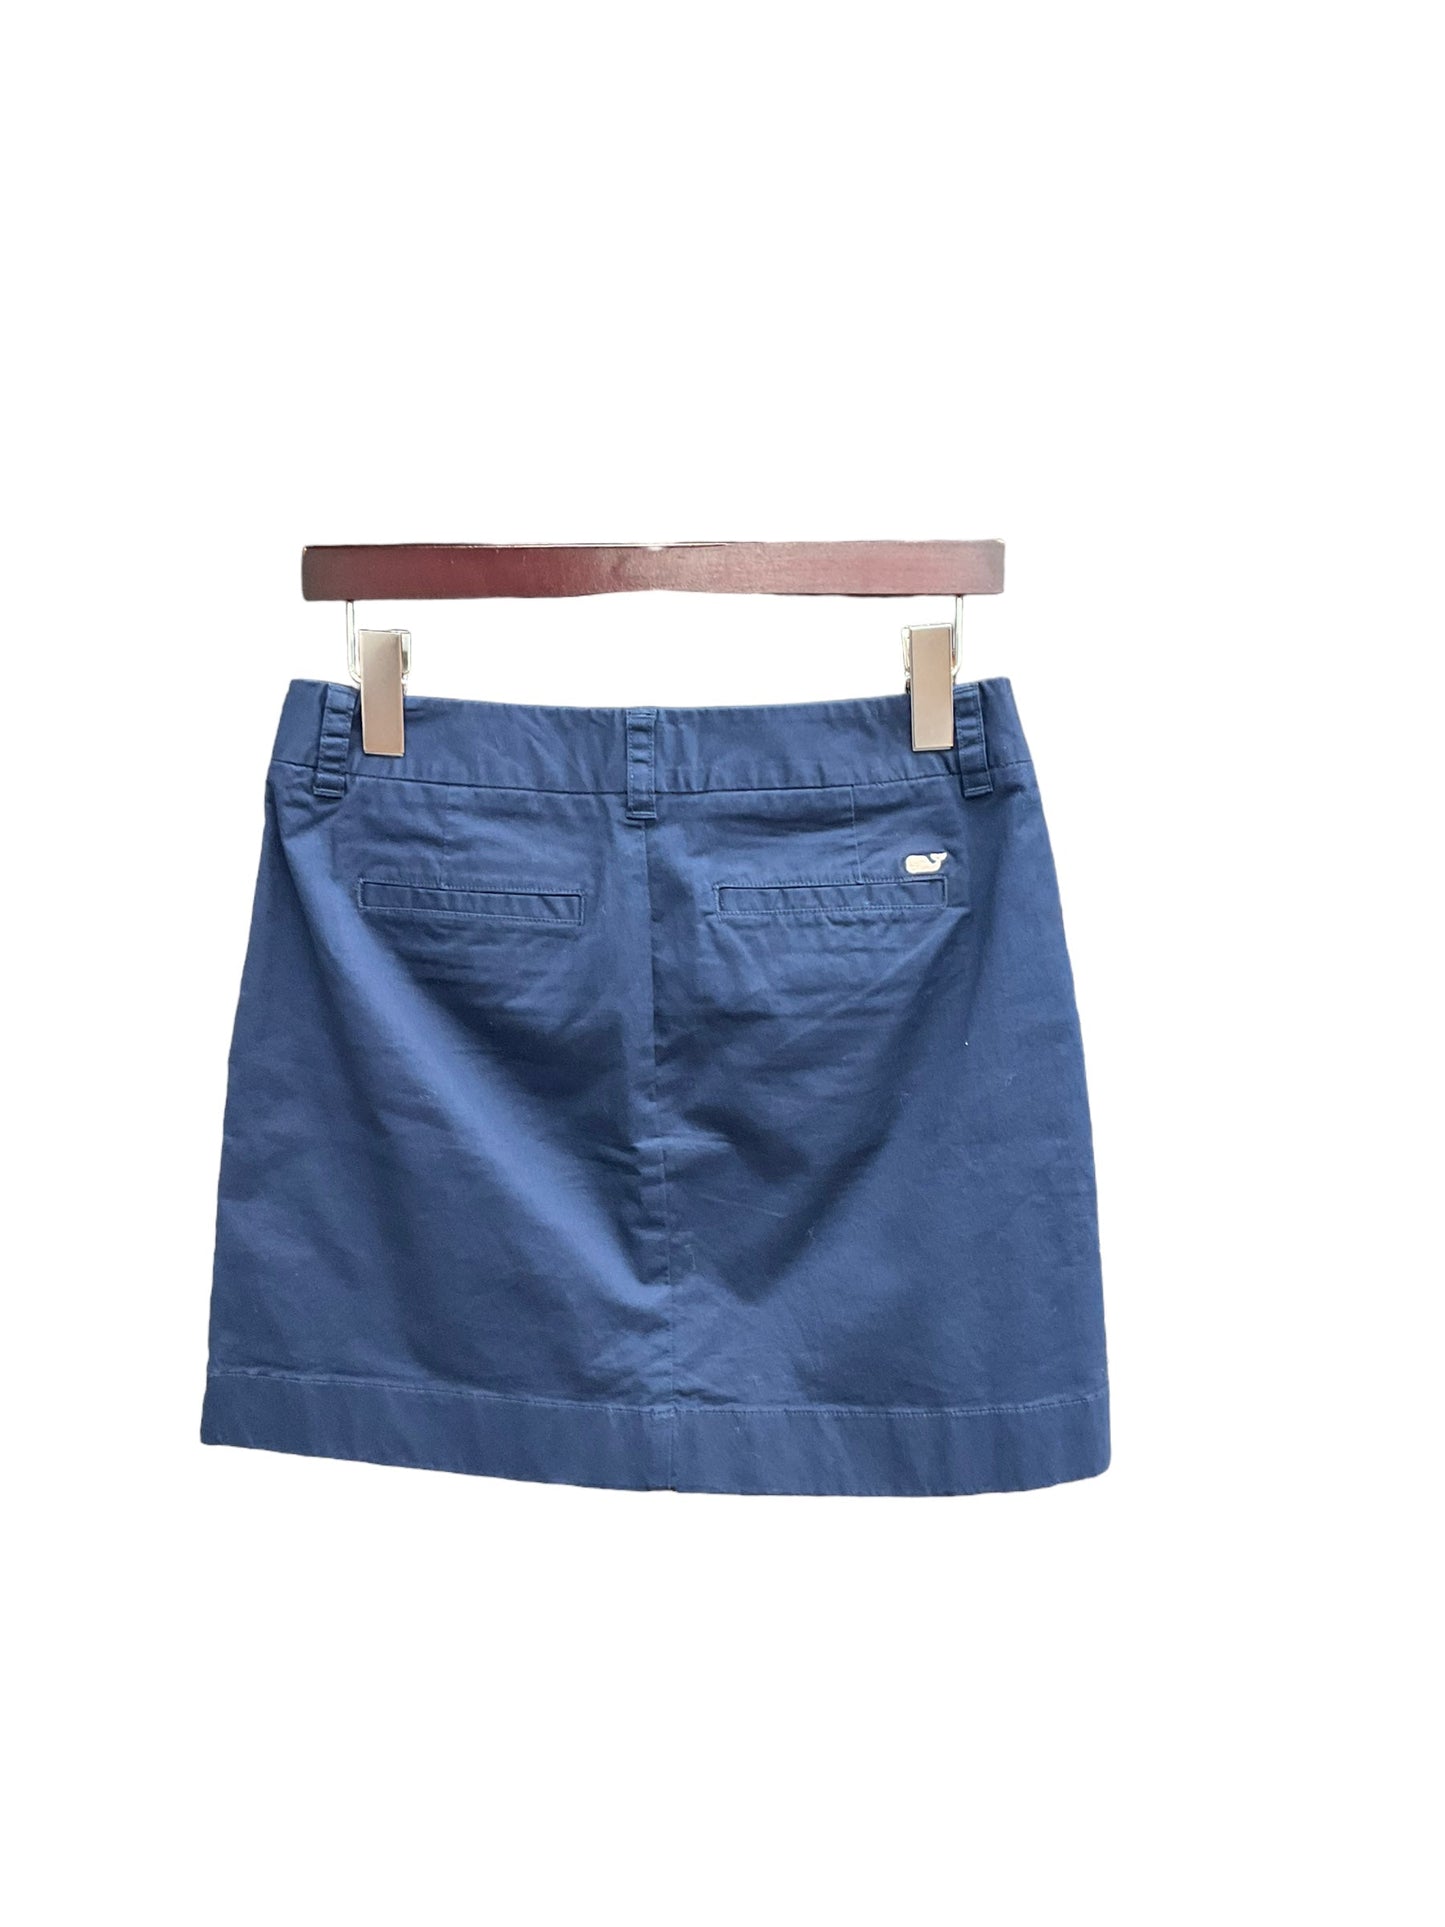 Skirt Mini & Short By Vineyard Vines  Size: 2